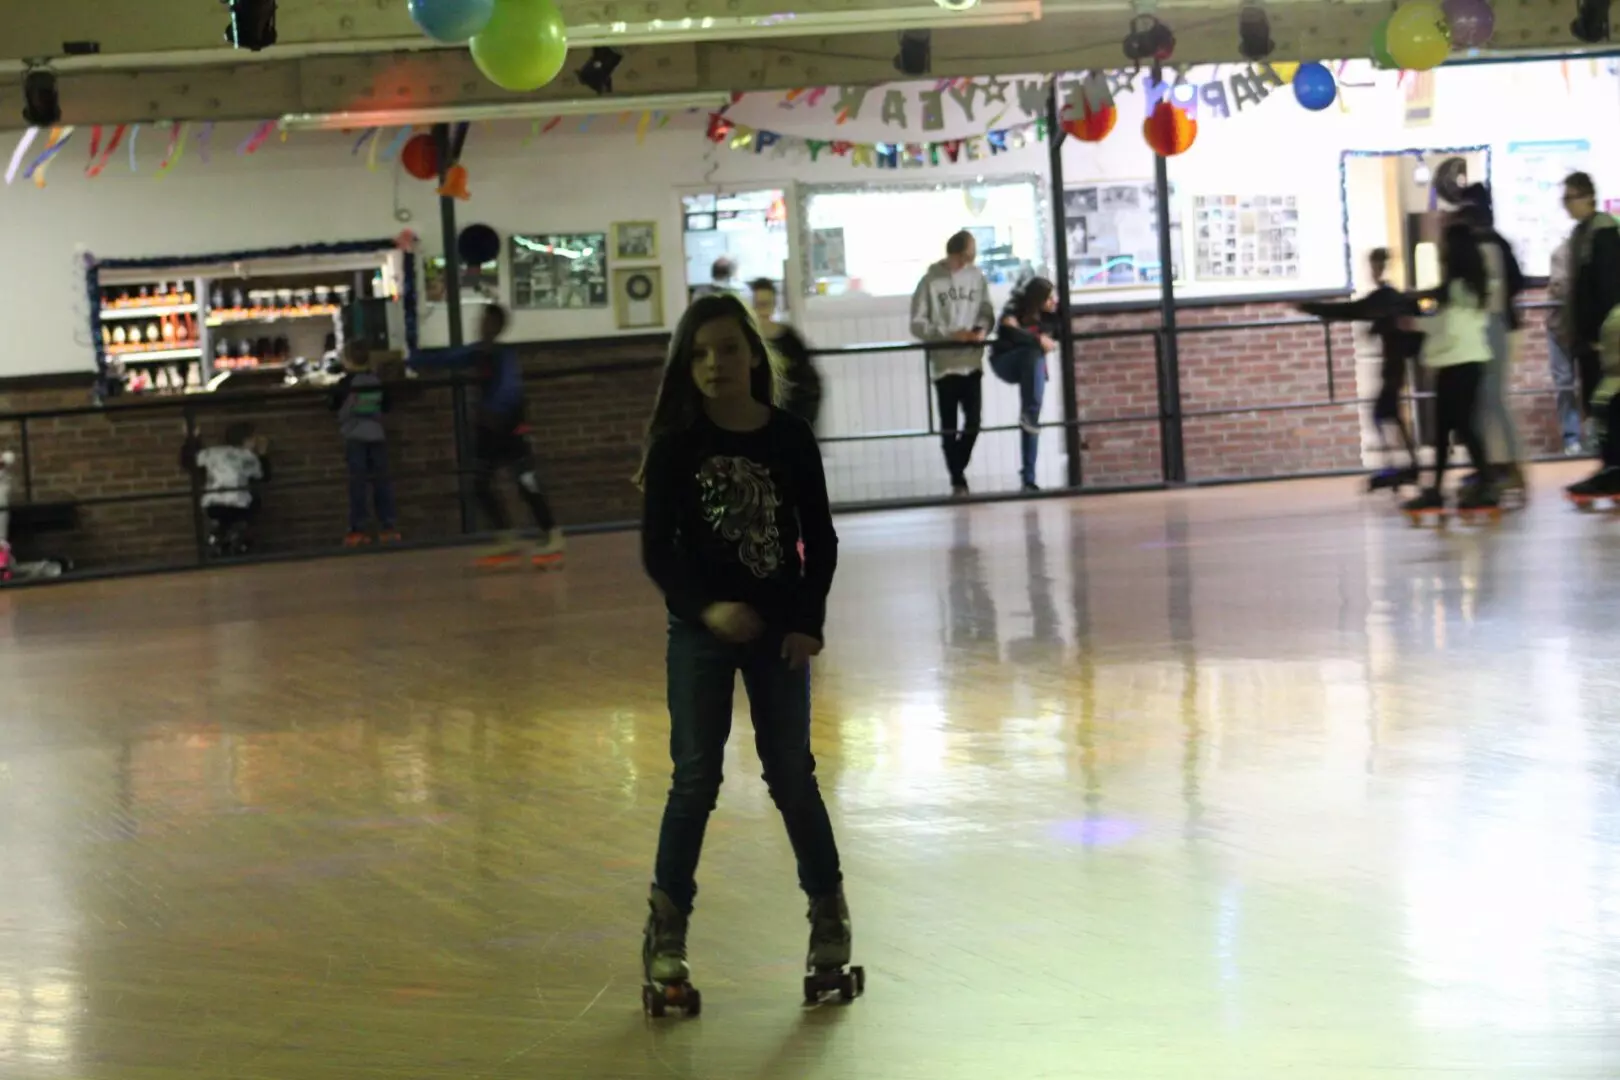 A girl skating